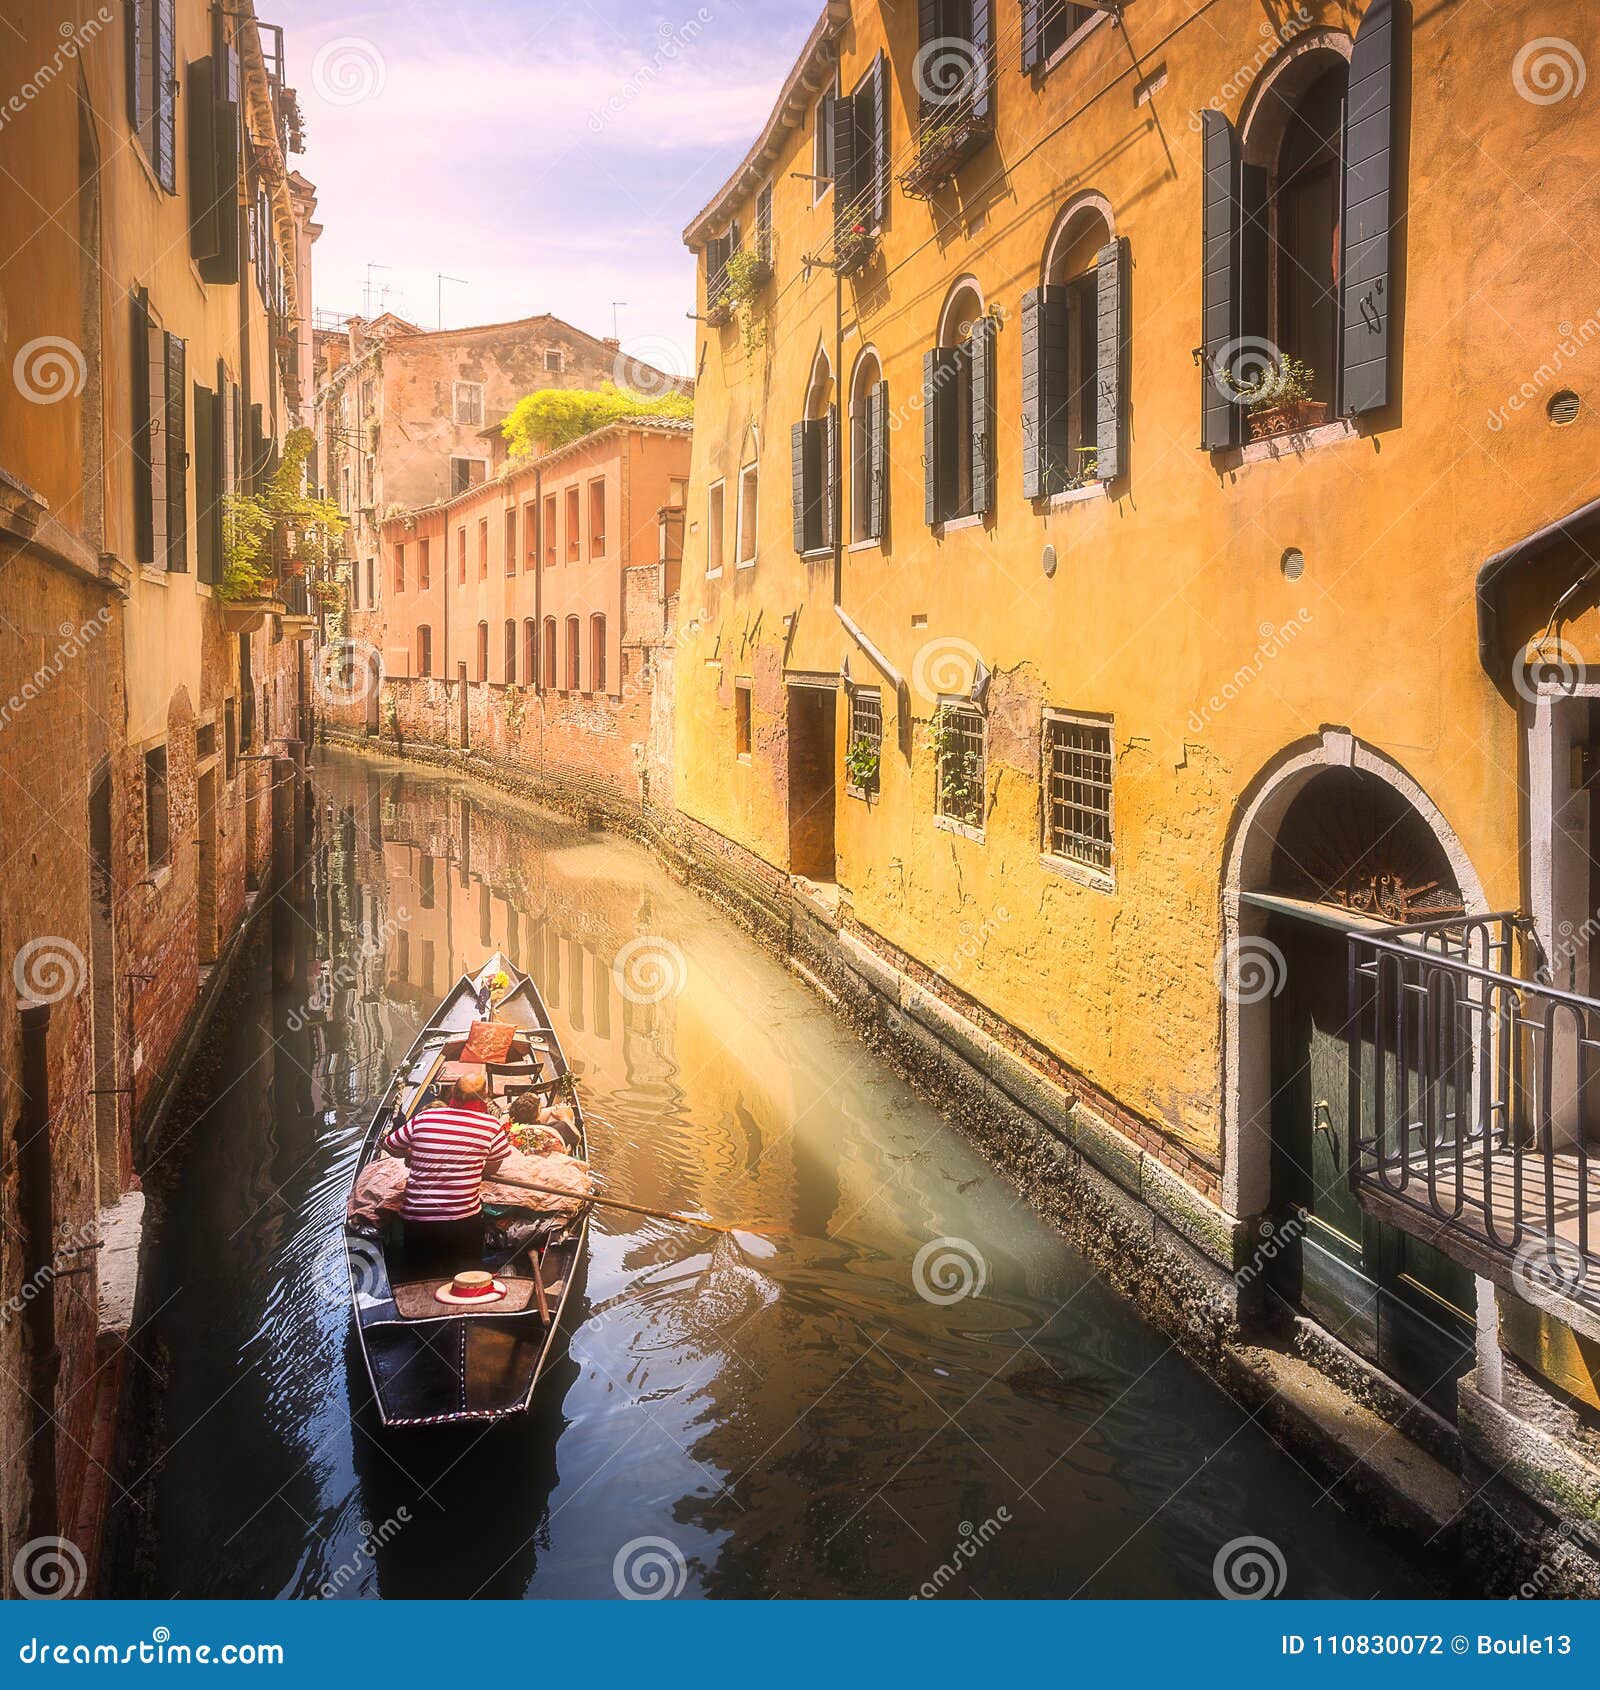 venecia canal with boats and gondolas, italy